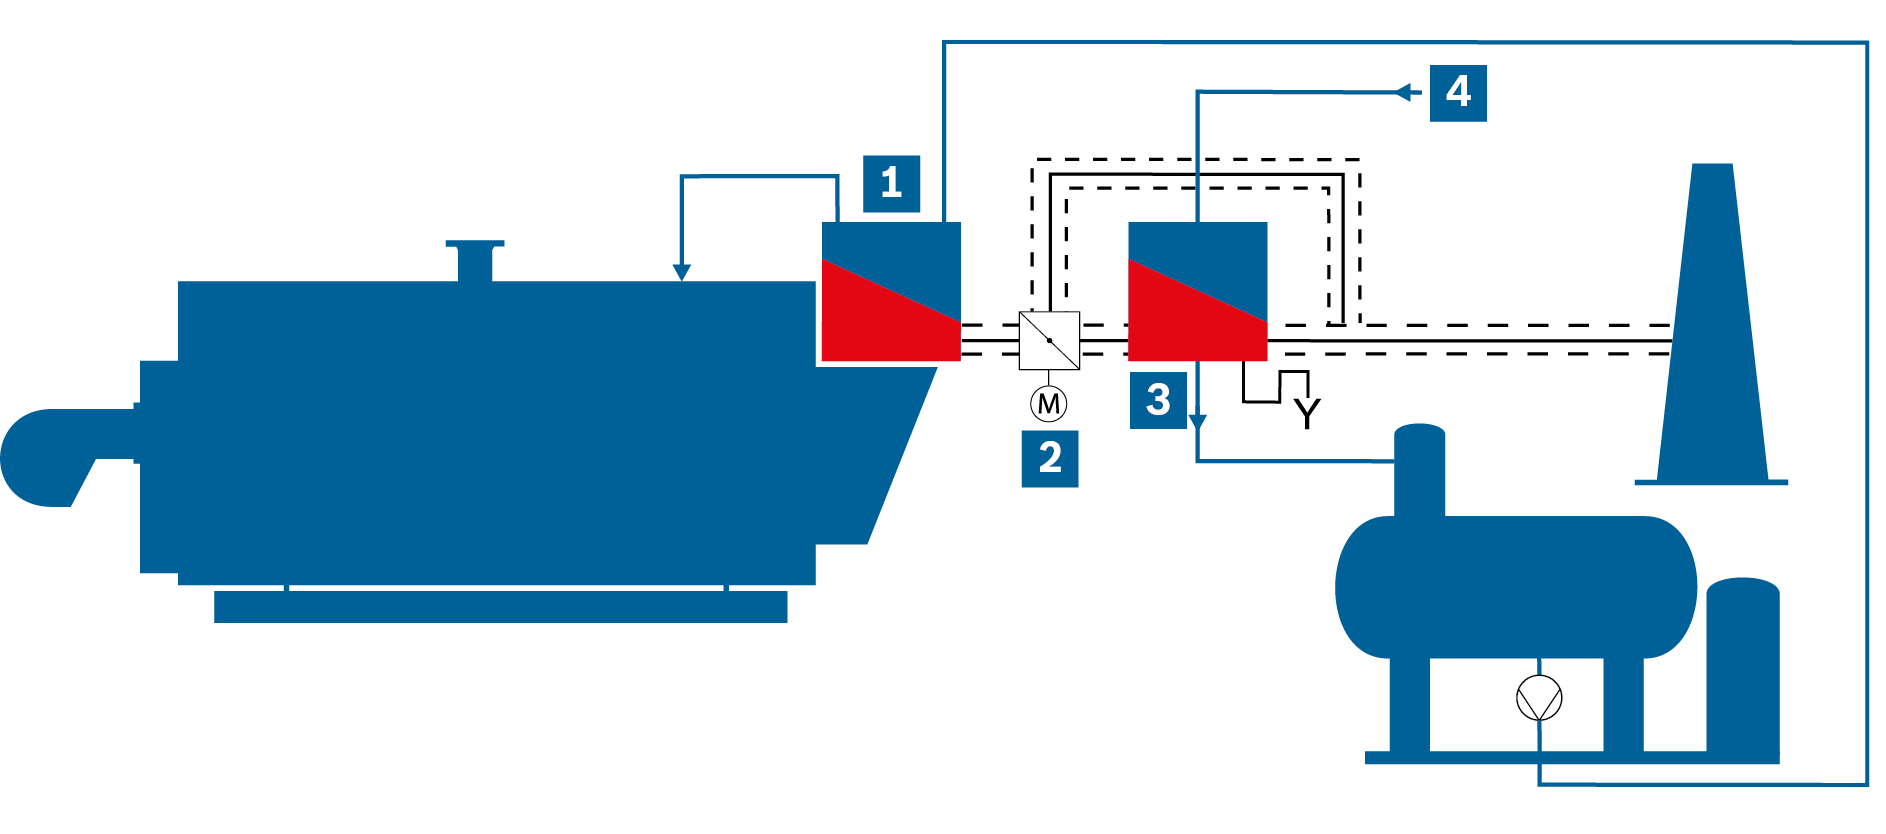 Zjednodušený vývojový diagram parního kotlového zařízení s integrovaným ekonomizérem a následným kondenzačním
ekonomizérem